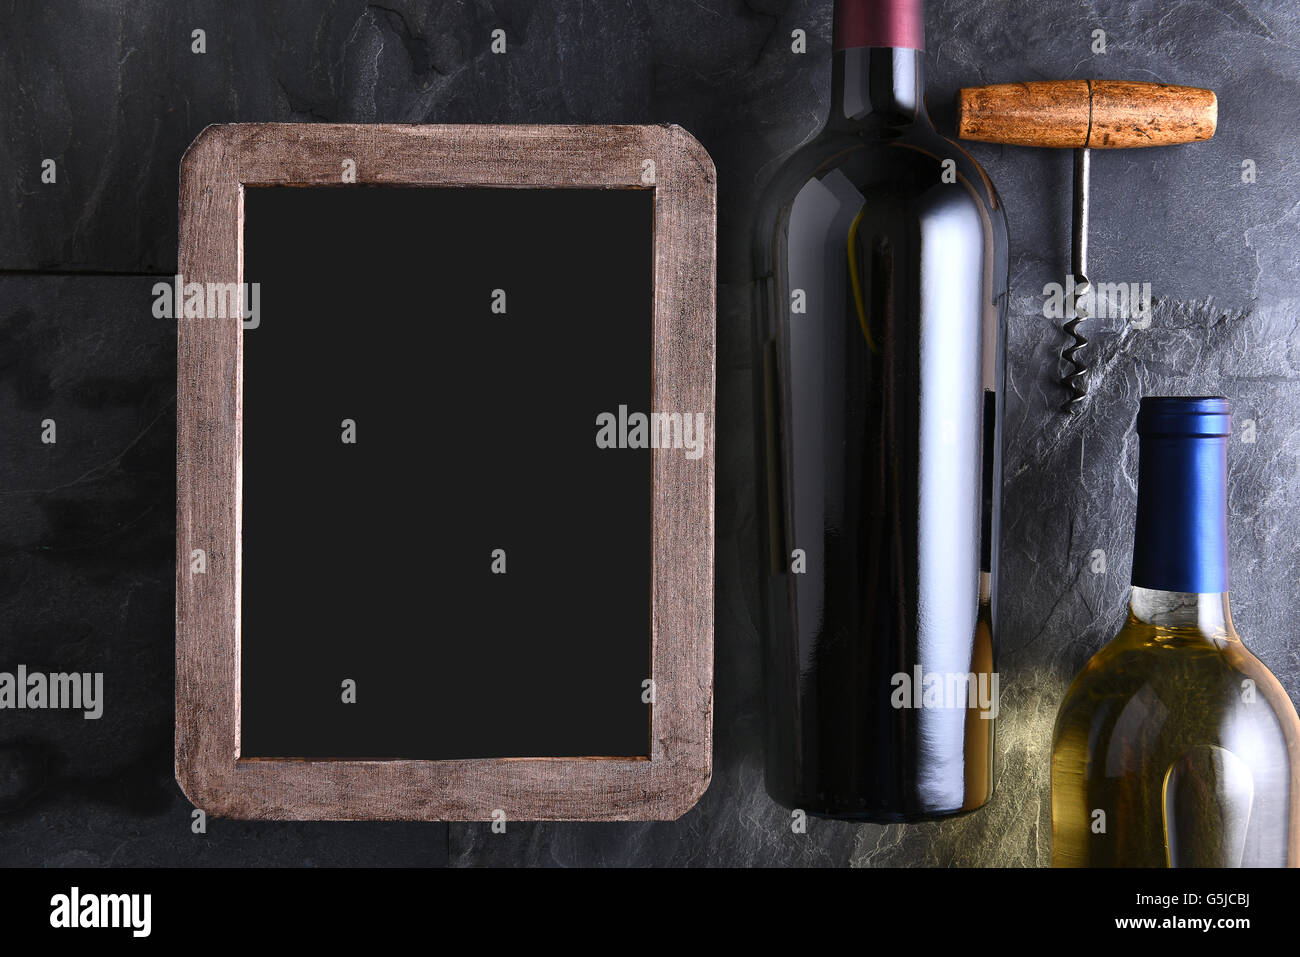 Draufsicht der zwei Flaschen Wein und Korkenzieher neben einem leeren Kreide Board Wein Liste. Stockfoto